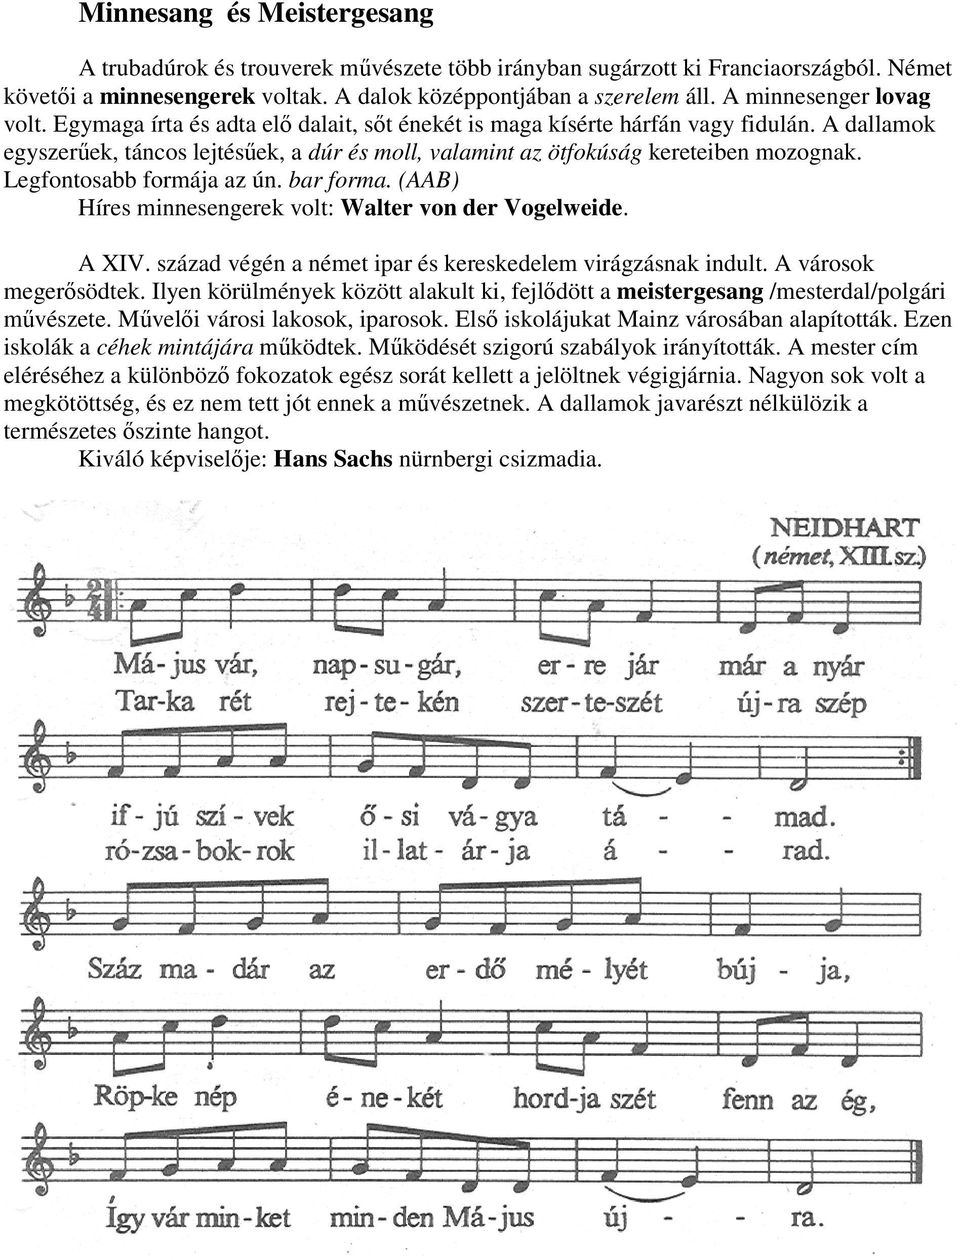 A dallamok egyszerőek, táncos lejtésőek, a dúr és moll, valamint az ötfokúság kereteiben mozognak. Legfontosabb formája az ún. bar forma. (AAB) Híres minnesengerek volt: Walter von der Vogelweide.